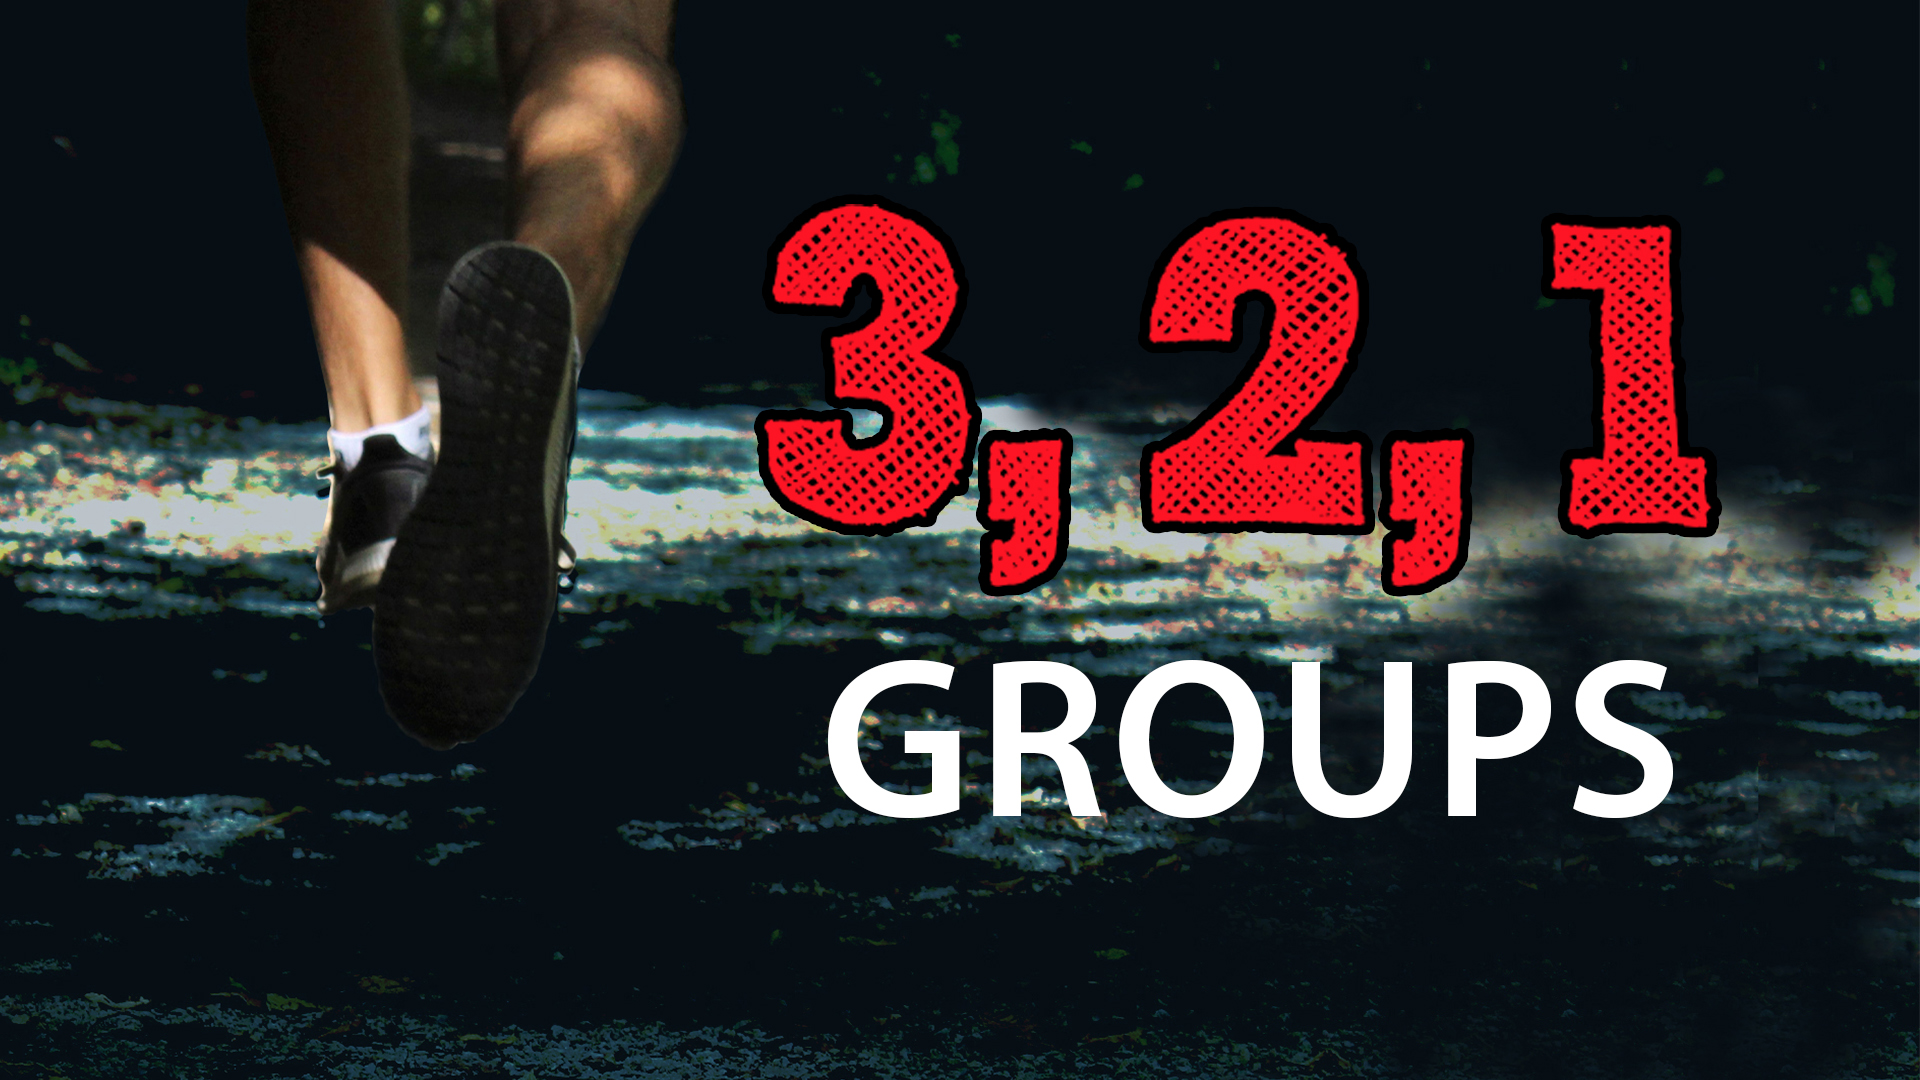 321 men's groups